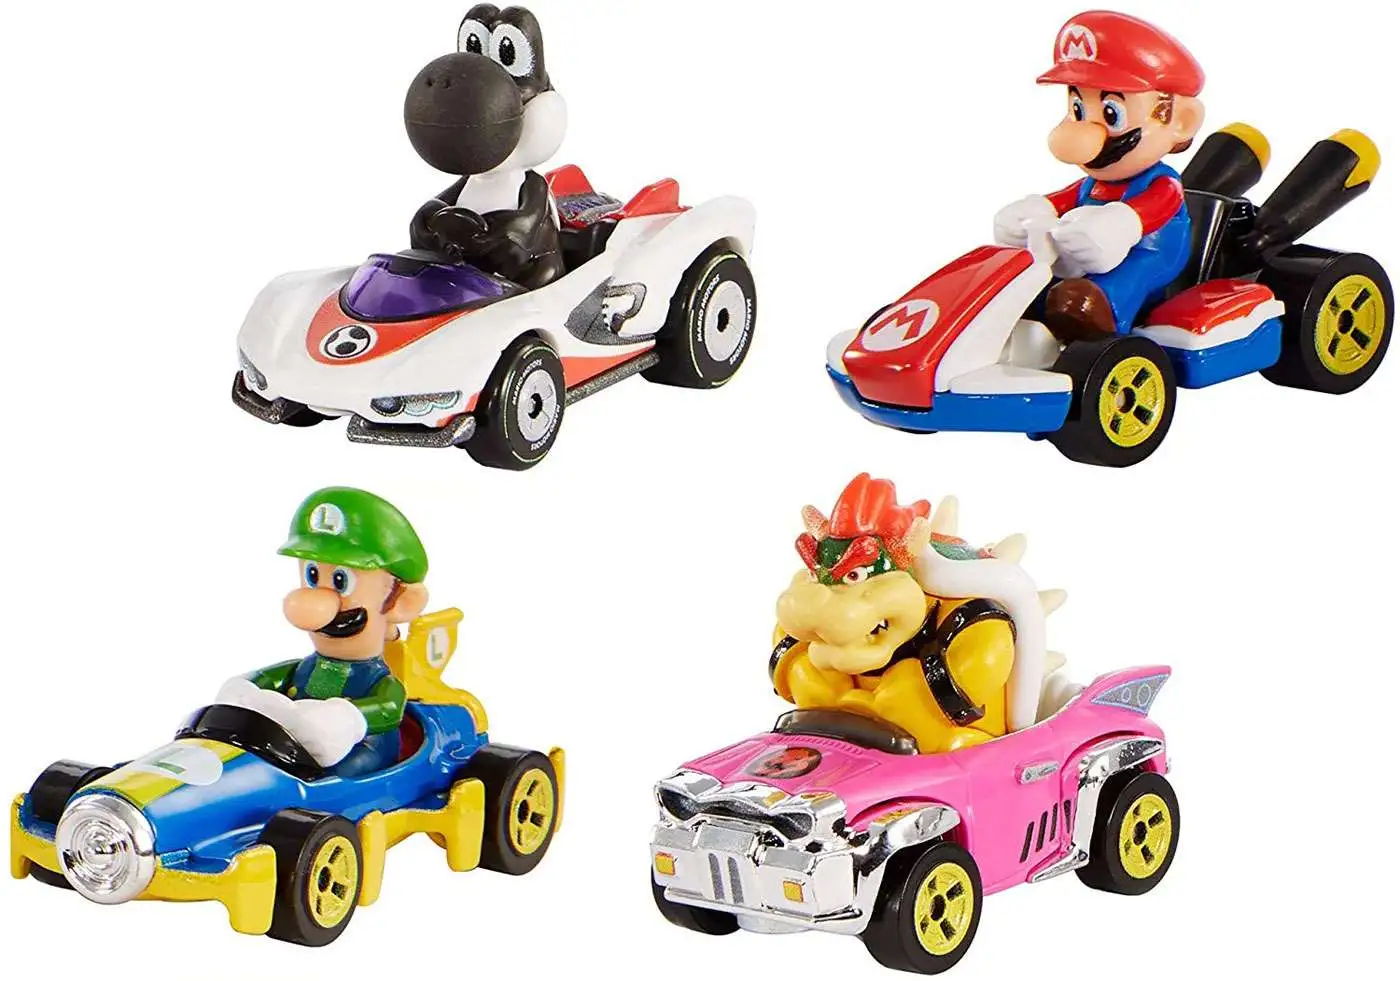 Details about   Hot Wheels Mario Kart MARIOKART 4pcs Set GLN53 Mario Luigi Bowser Black Yoshi 